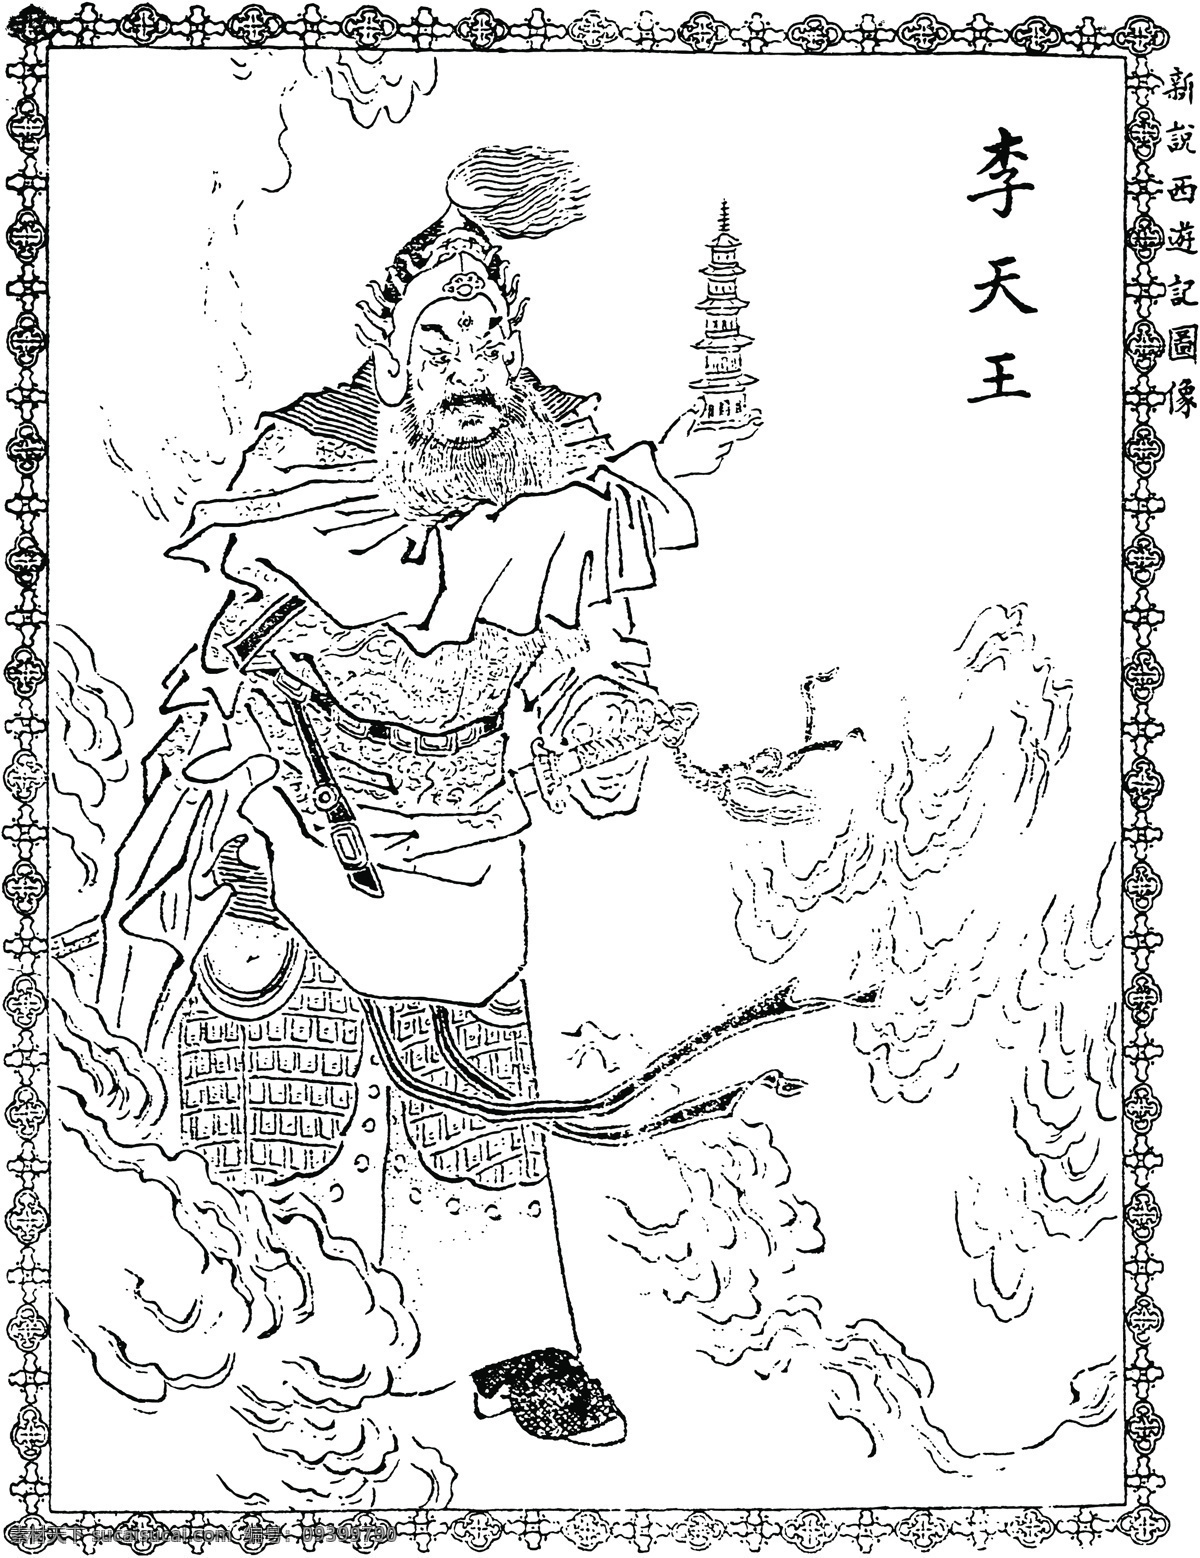 中国 古典文学 插图 木刻版画 传统文化 中国传统文化 设计素材 版画世界 书画美术 白色